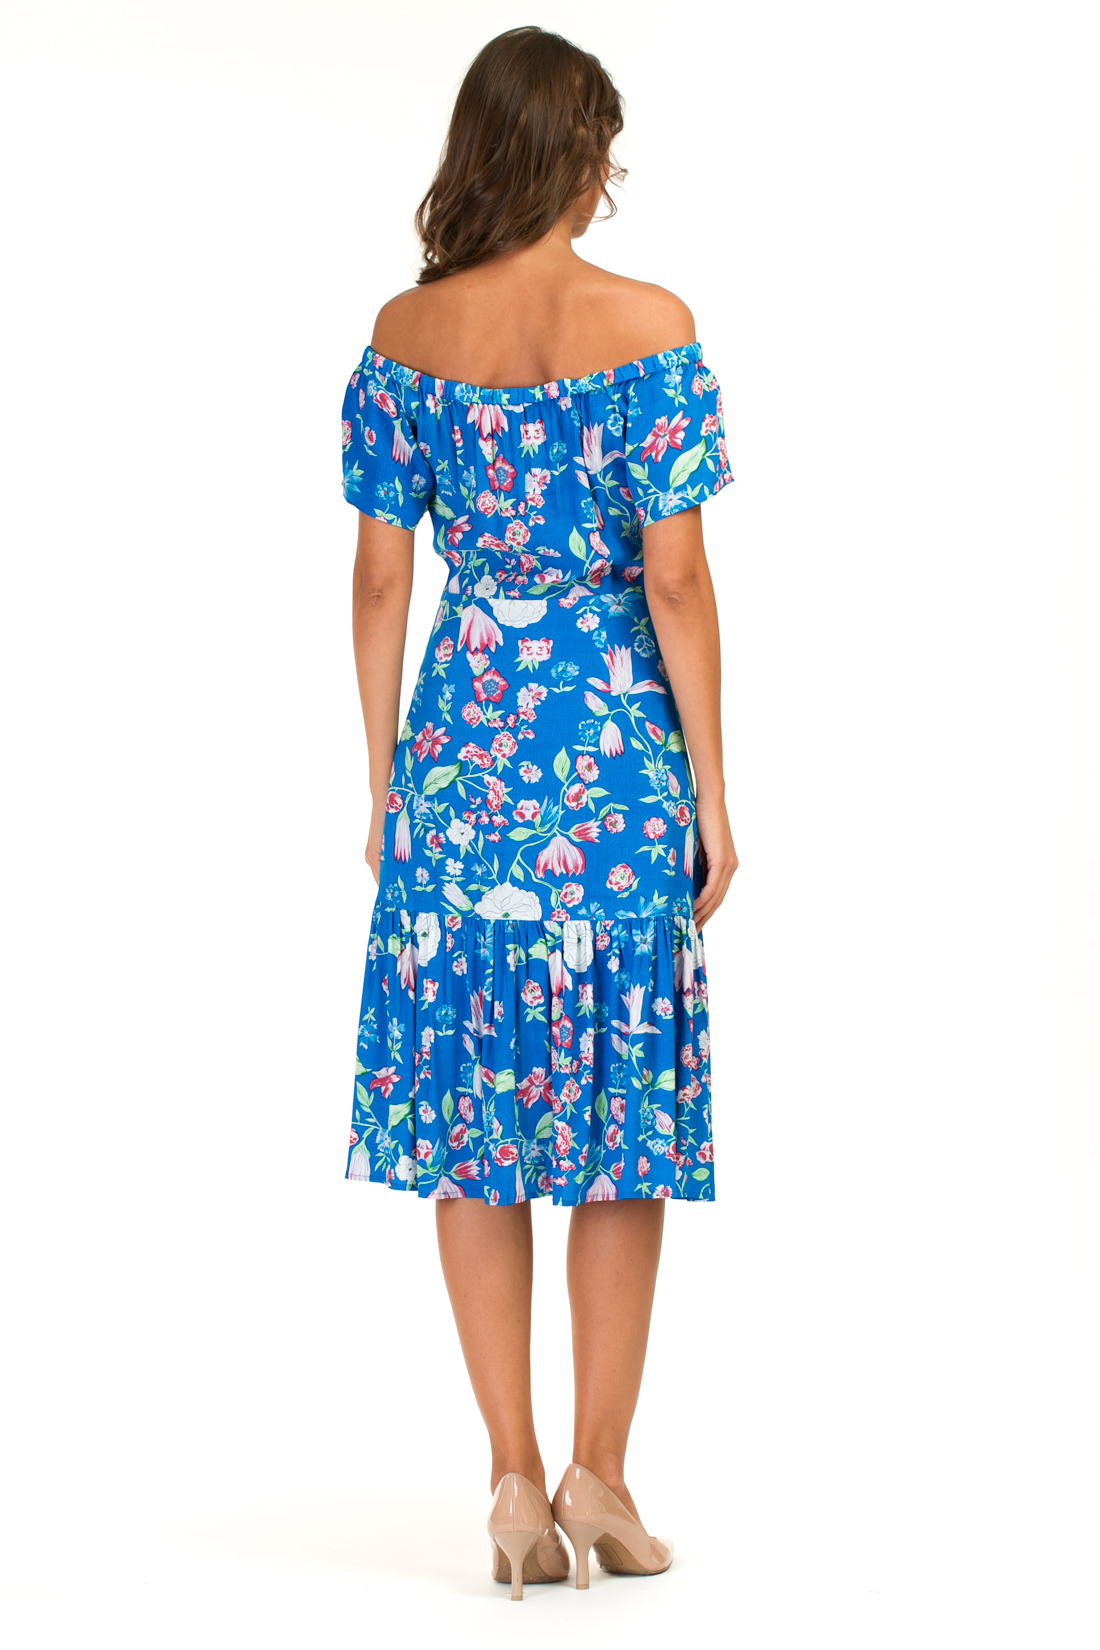 Платье с оборкой и открытыми плечами (арт. baon B457055), размер XS, цвет синий Платье с оборкой и открытыми плечами (арт. baon B457055) - фото 2